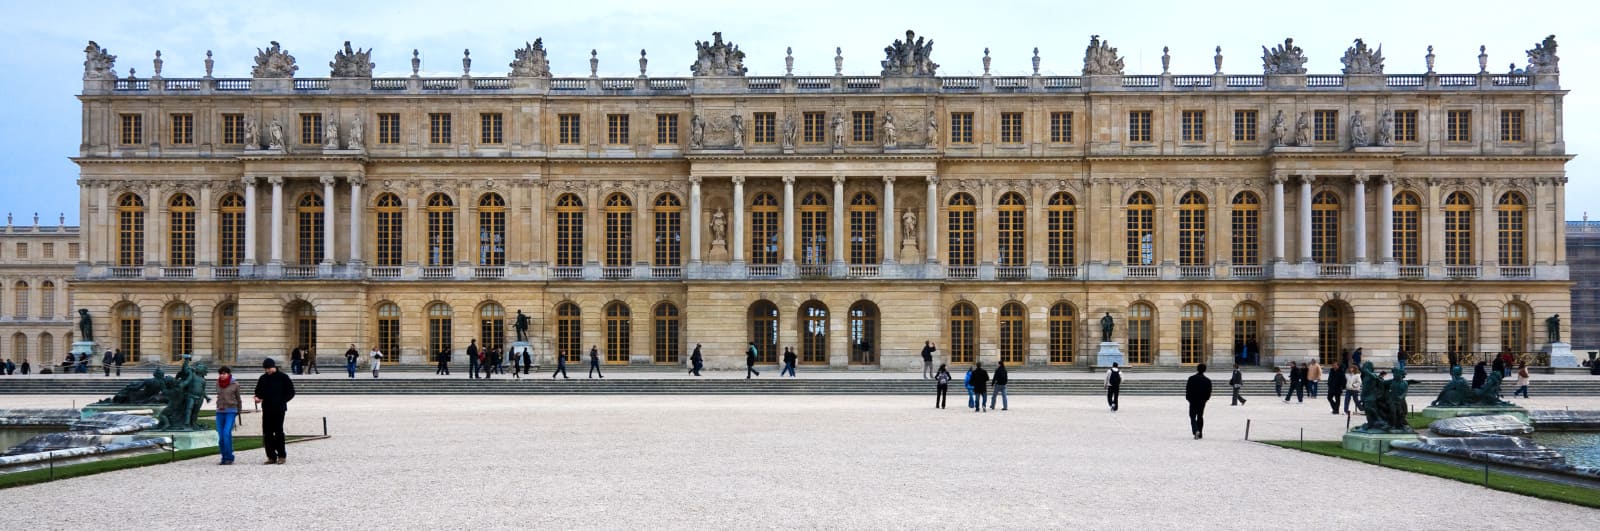 Versailles marchio per alimenti di lusso come gli asparagi bianchi